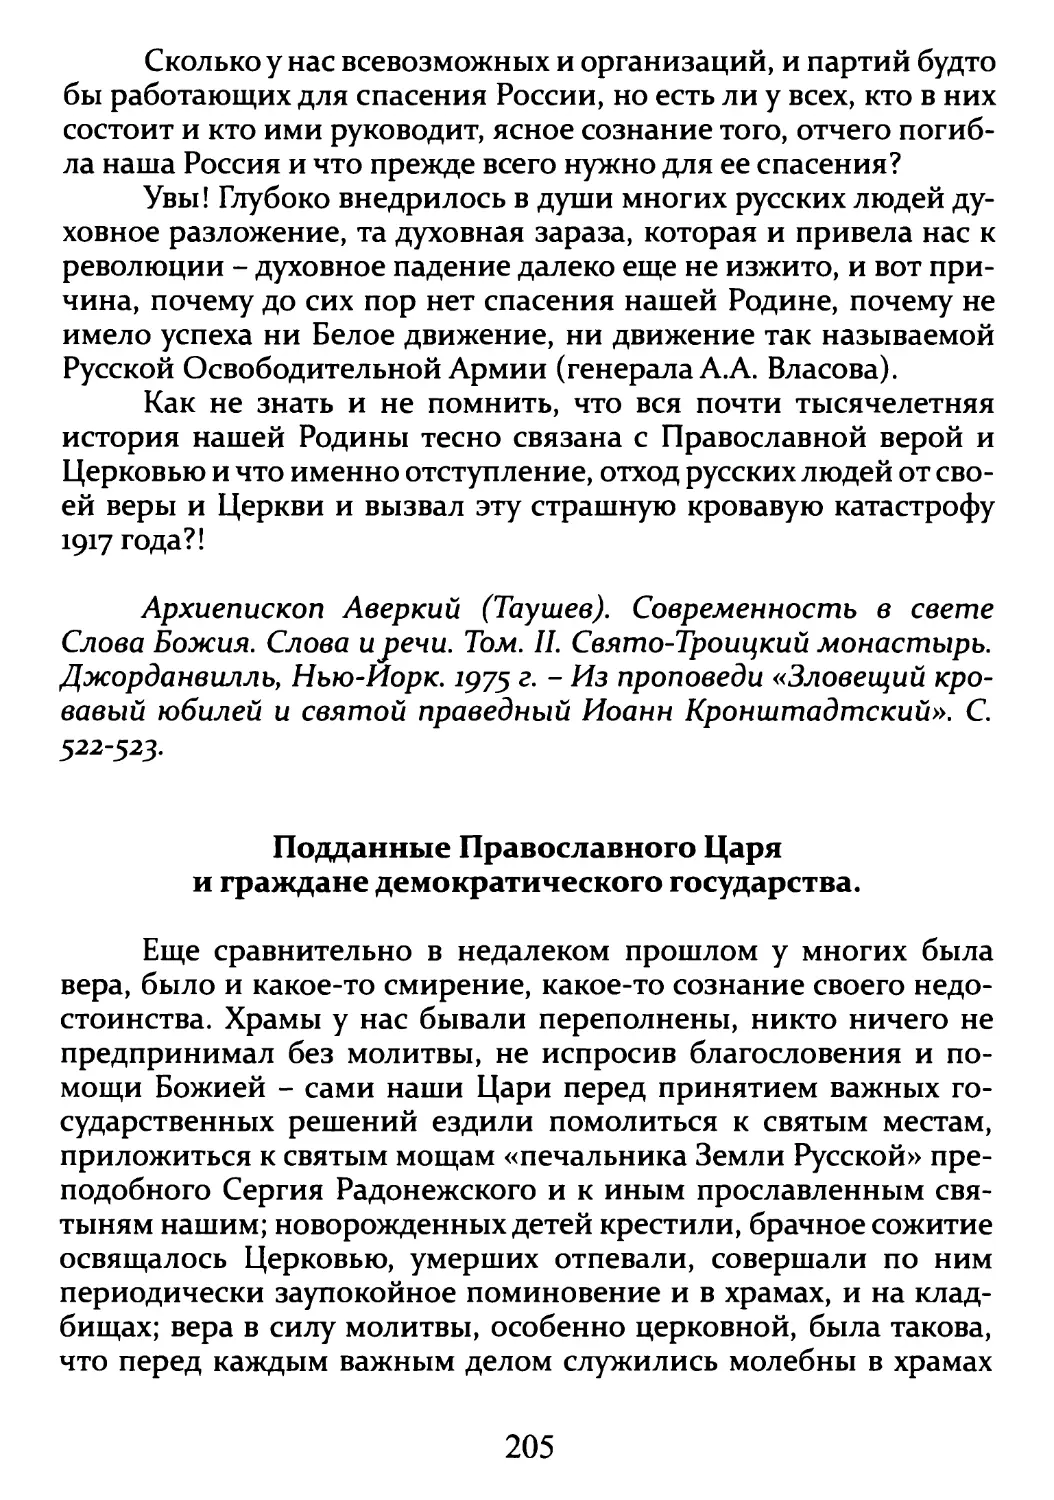 Подданные Православного Царя и граждане демократического государства